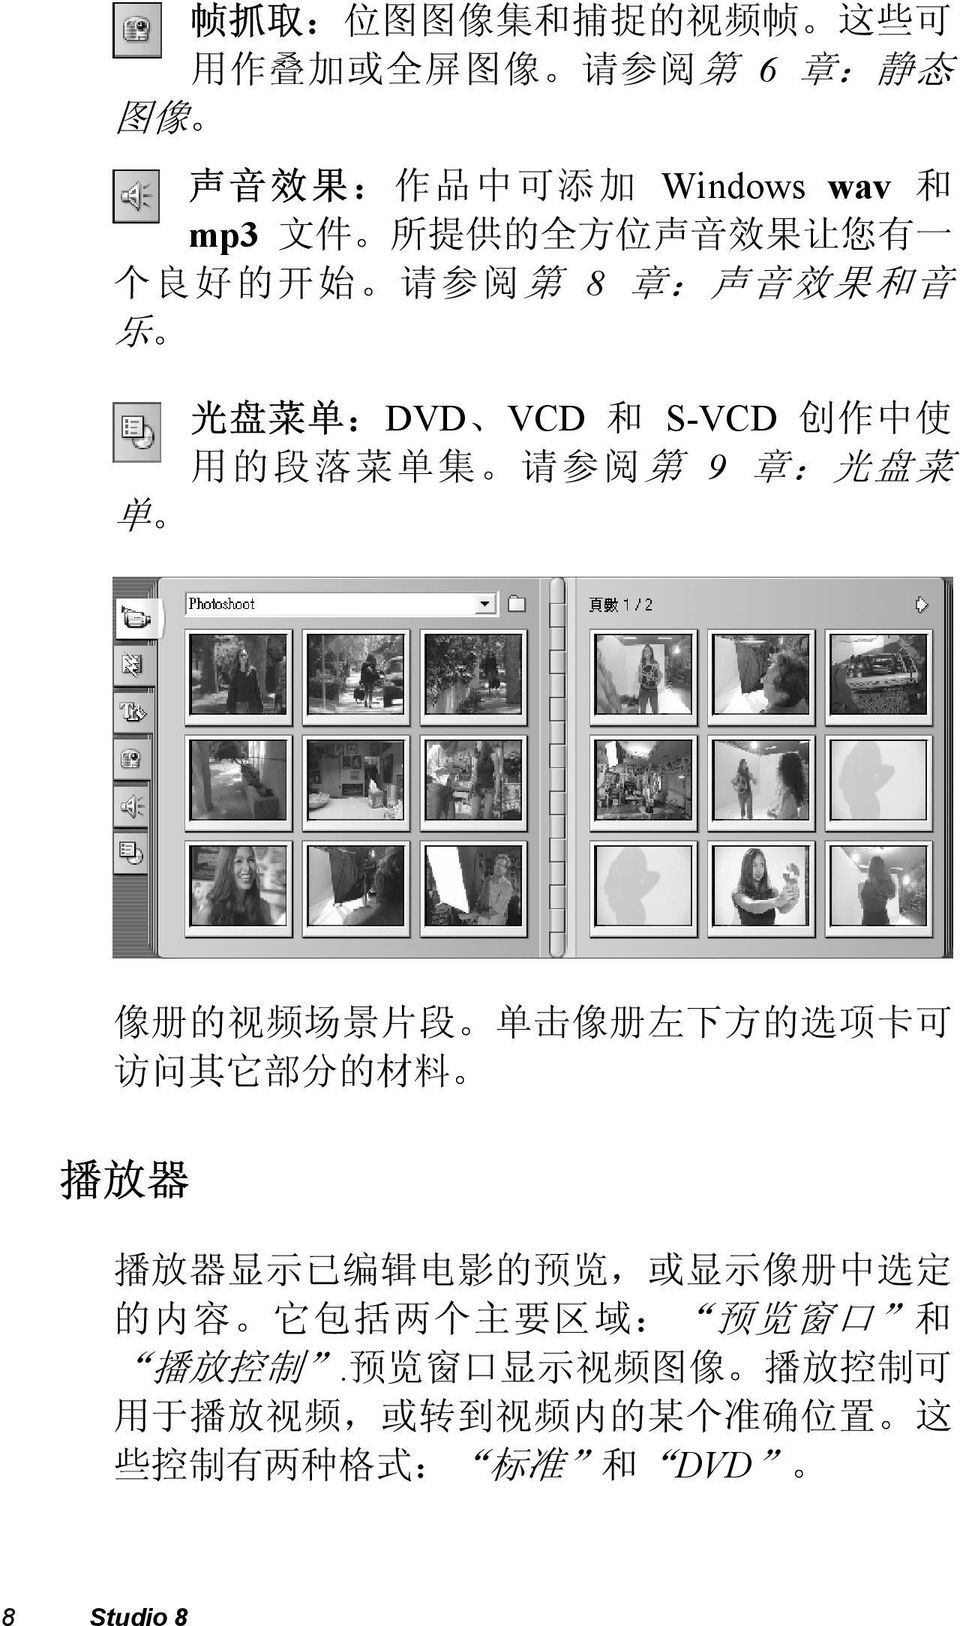 像 册 的 视 频 场 景 片 段 单 击 像 册 左 下 方 的 选 项 卡 可 访 问 其 它 部 分 的 材 料 播 放 器 播 放 器 显 示 已 编 辑 电 影 的 预 览, 或 显 示 像 册 中 选 定 的 内 容 它 包 括 两 个 主 要 区